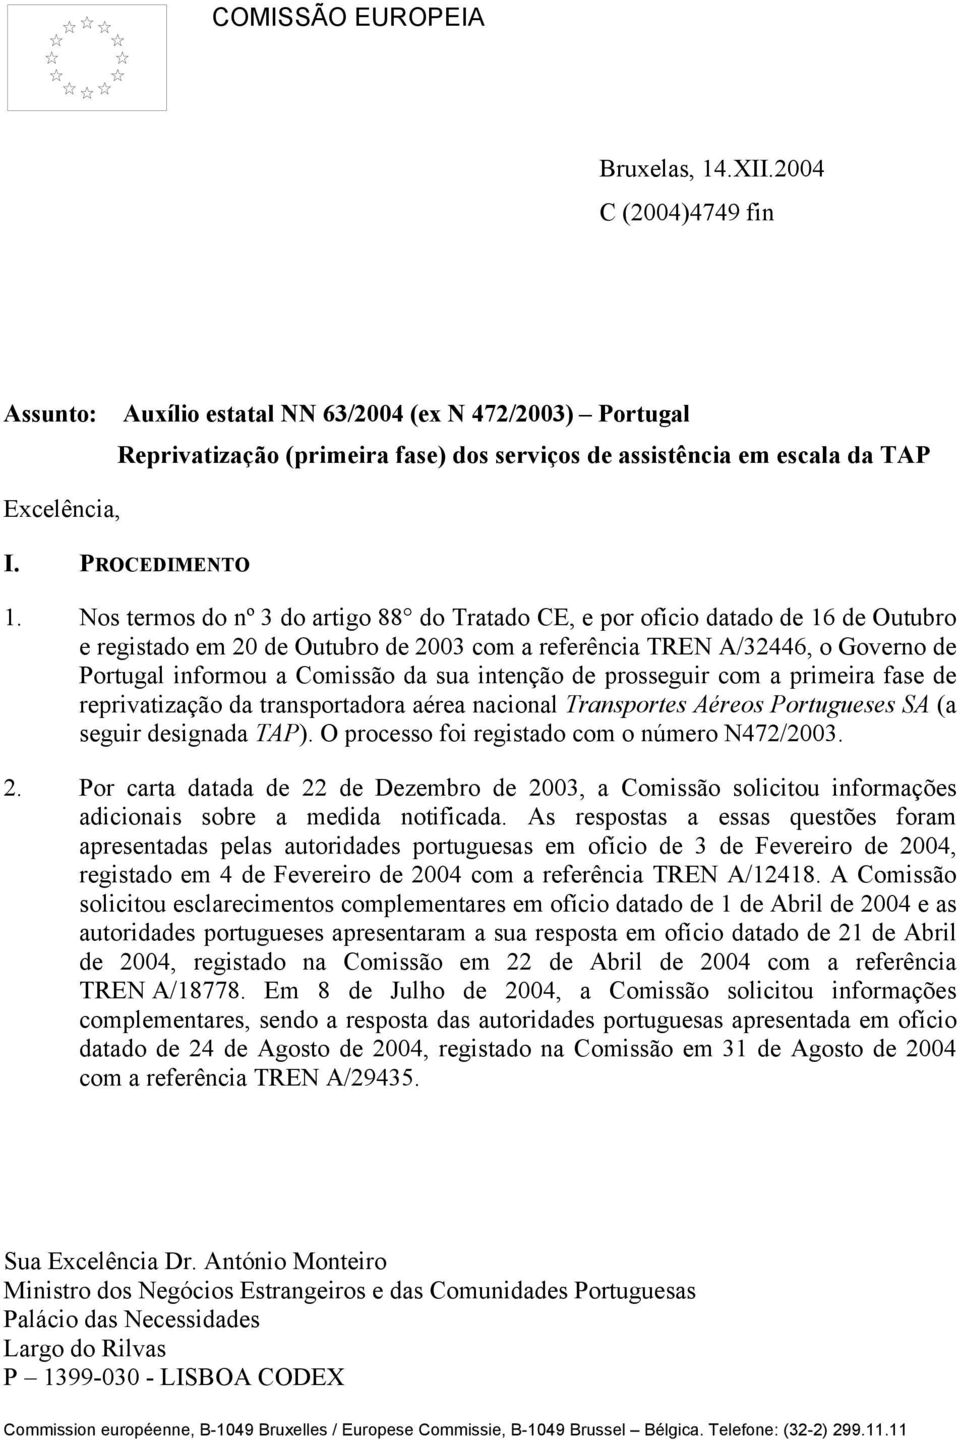 Nos termos do nº 3 do artigo 88 do Tratado CE, e por ofício datado de 16 de Outubro e registado em 20 de Outubro de 2003 com a referência TREN A/32446, o Governo de Portugal informou a Comissão da